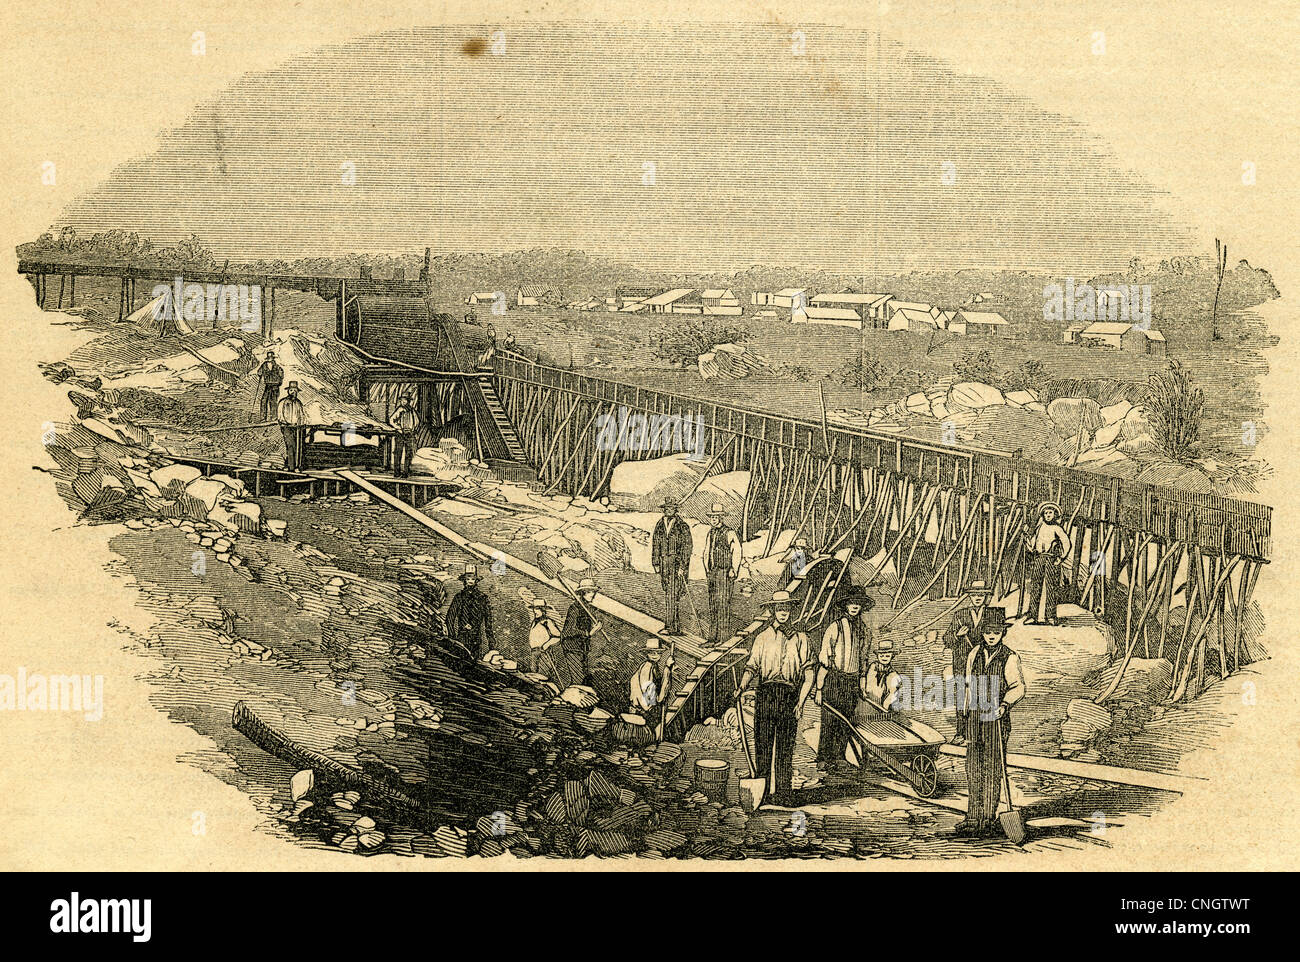 1854 Gravur, Parks' Bar arbeitet, kalifornischen Goldrausch. Stockfoto